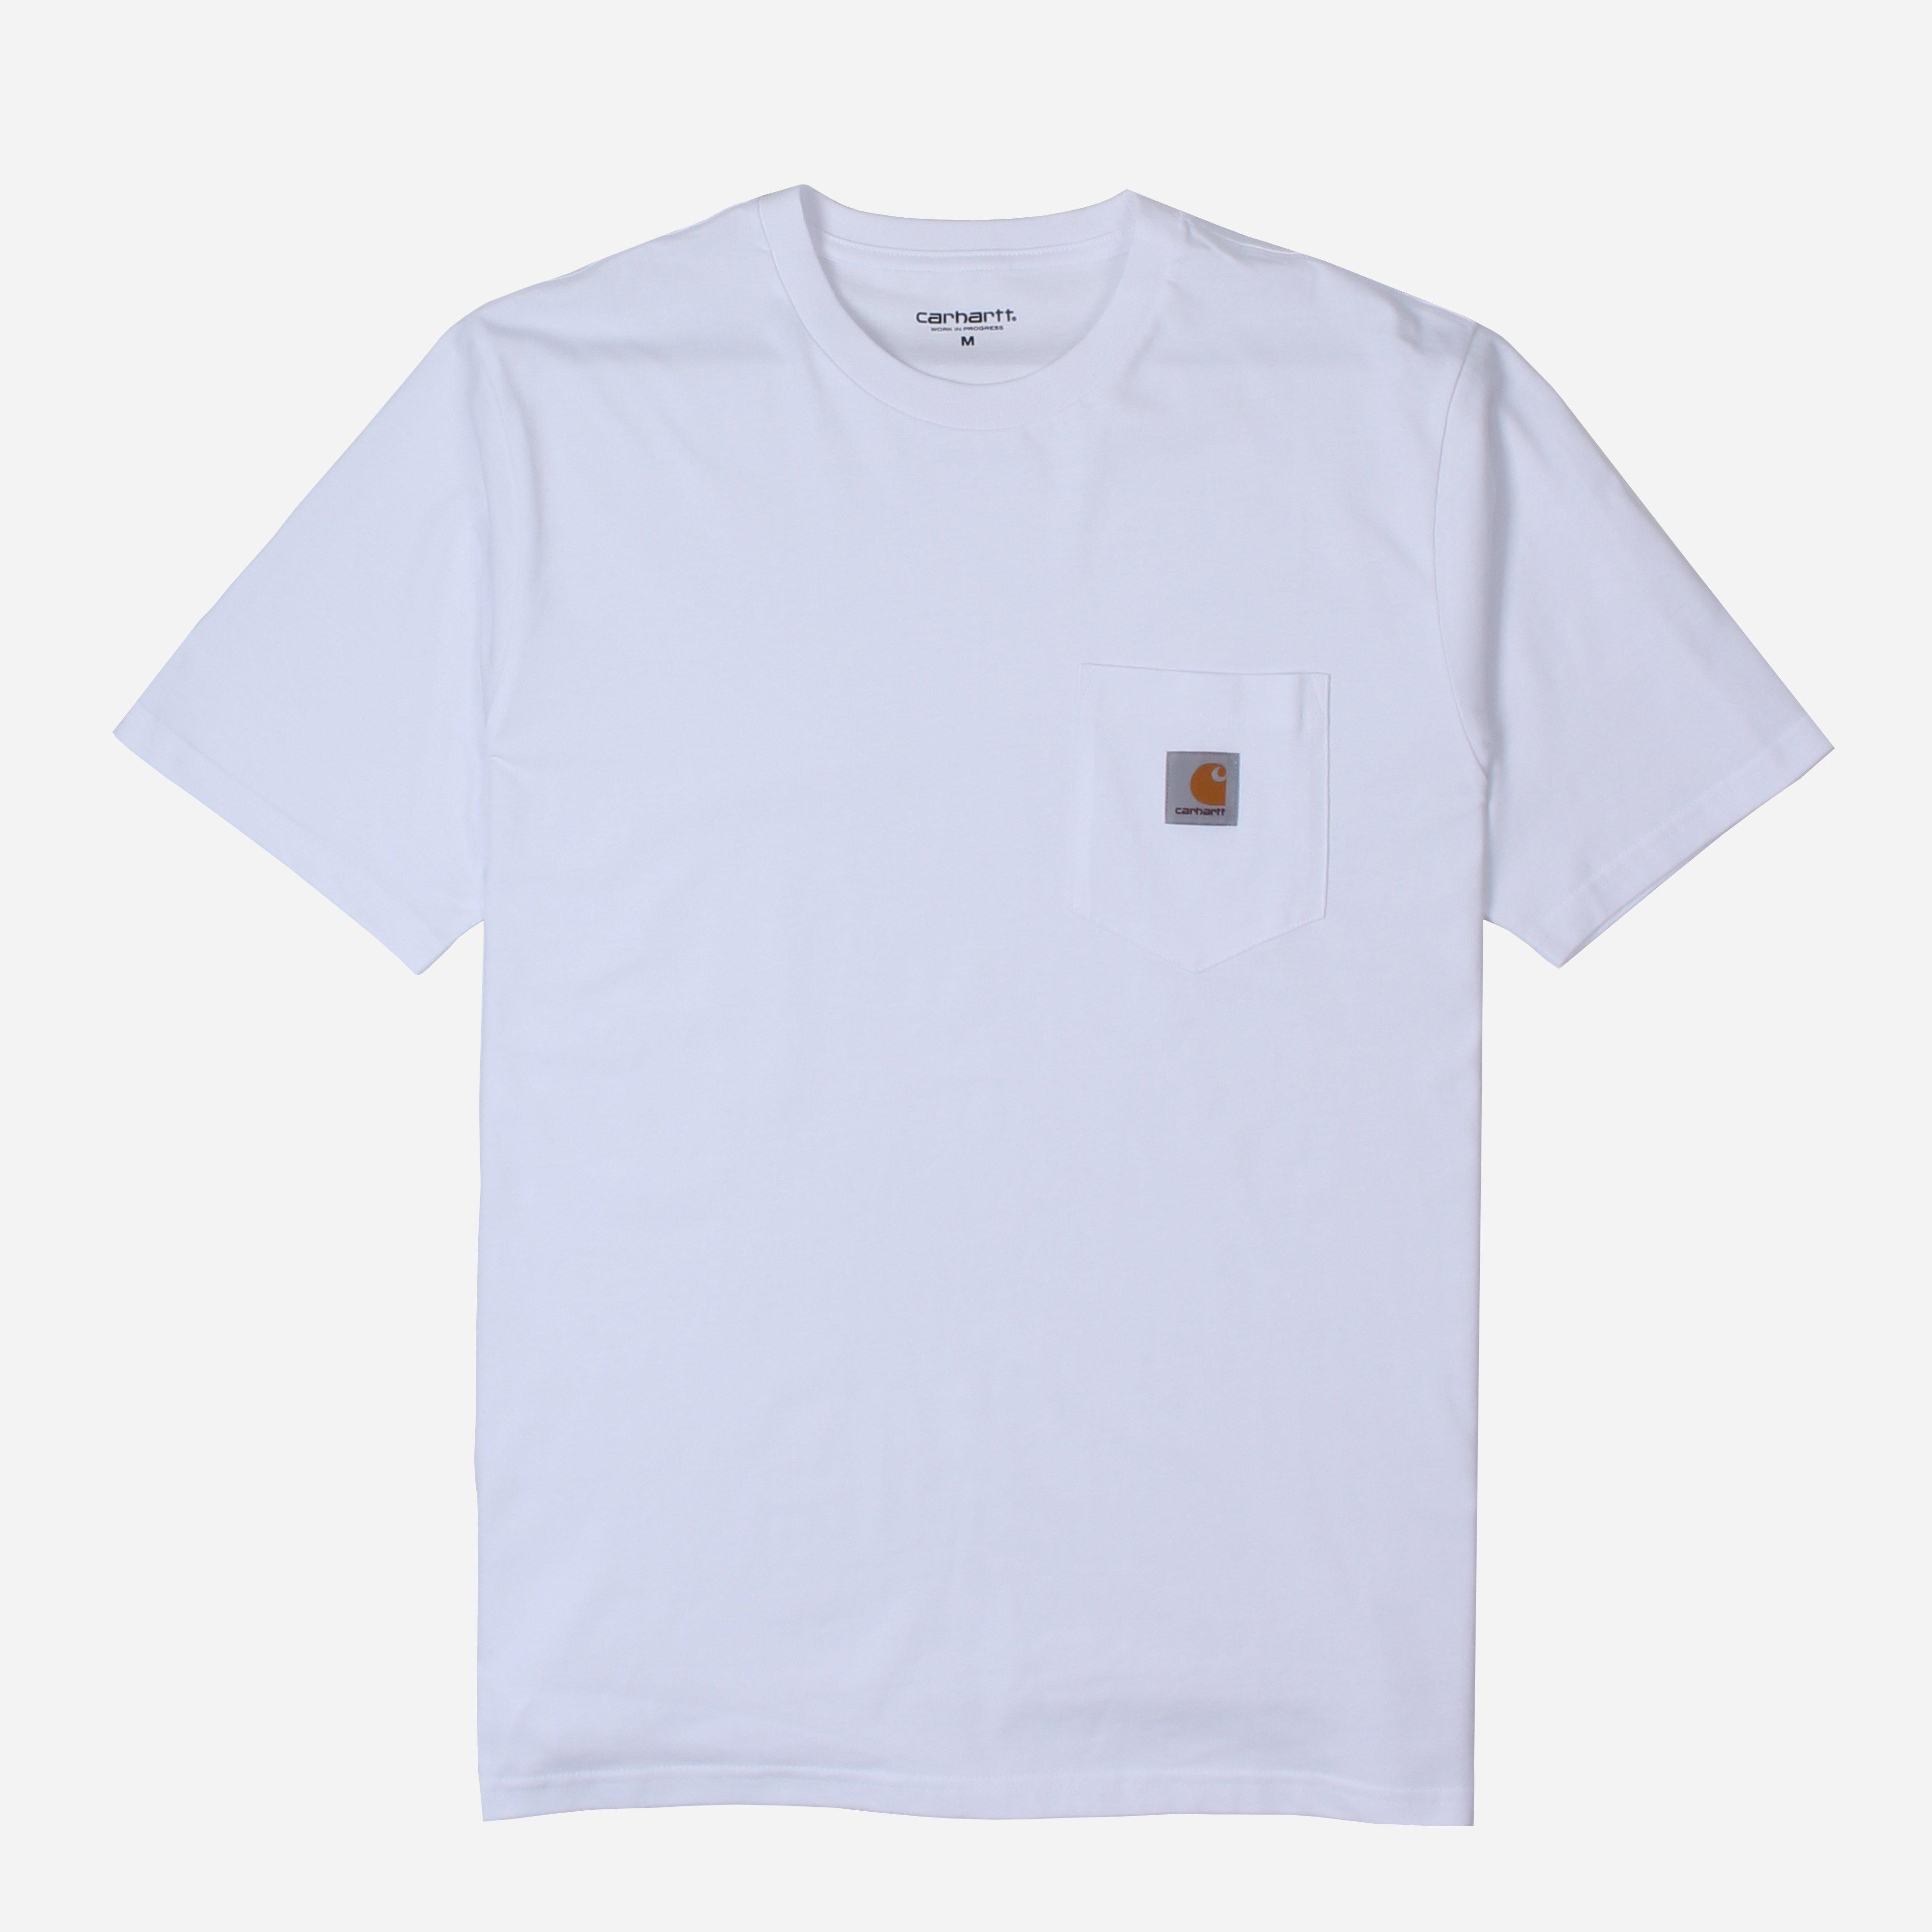 Lyst - Carhartt WIP Pocket T-shirt in White for Men